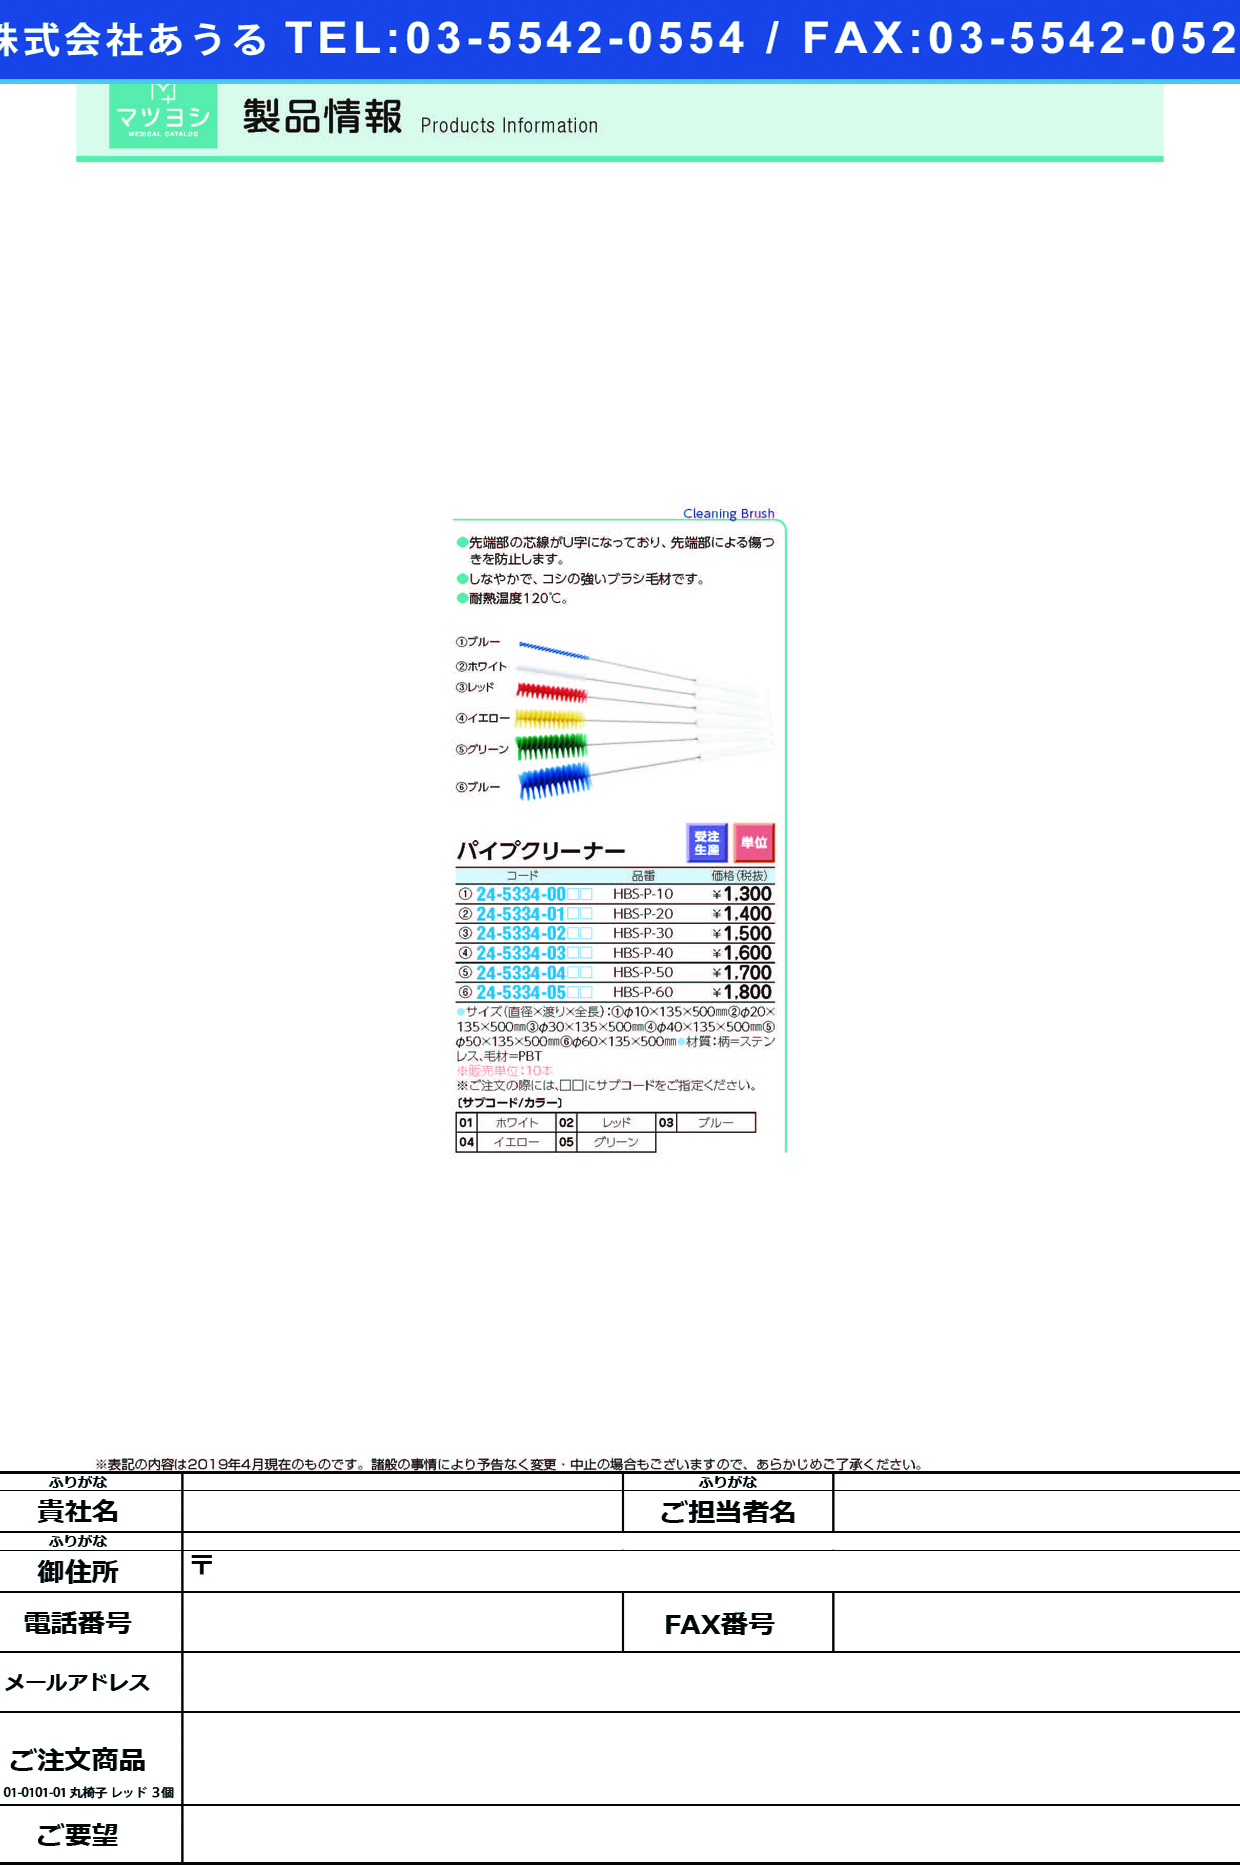 (24-5334-00)パイプクリーナー HBS-P-10 ﾊﾟｲﾌﾟｸﾘｰﾅｰ イエロー【10本単位】【2019年カタログ商品】